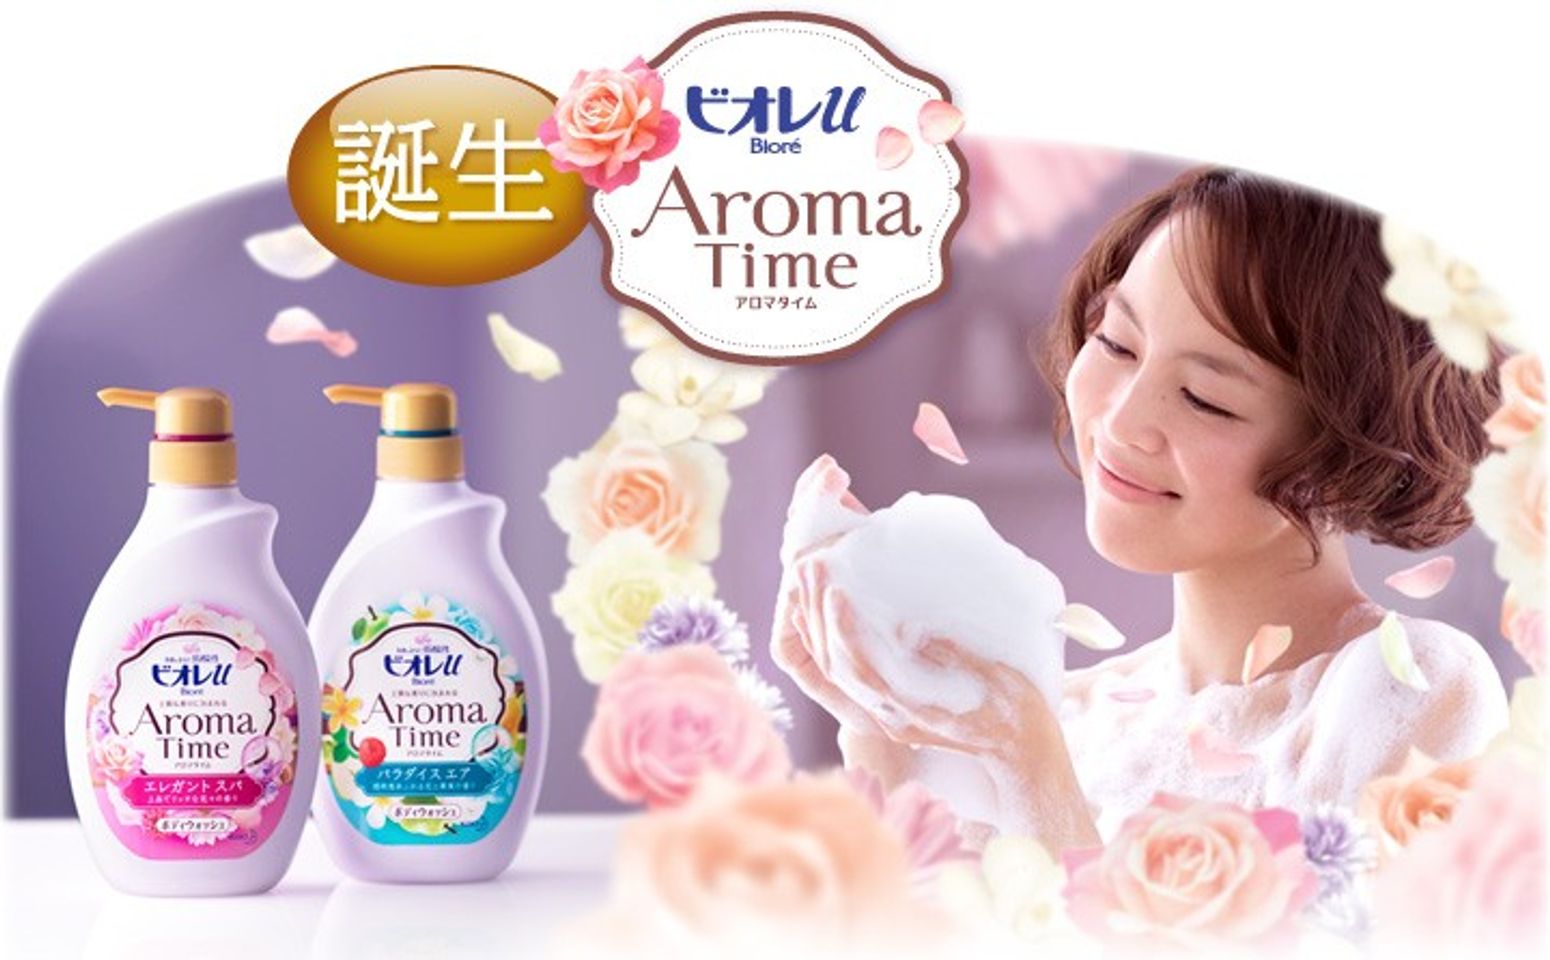 Sữa tắm Kao Aroma Time chiết xuất từ hoa cỏ thiên nhiên và trái cây